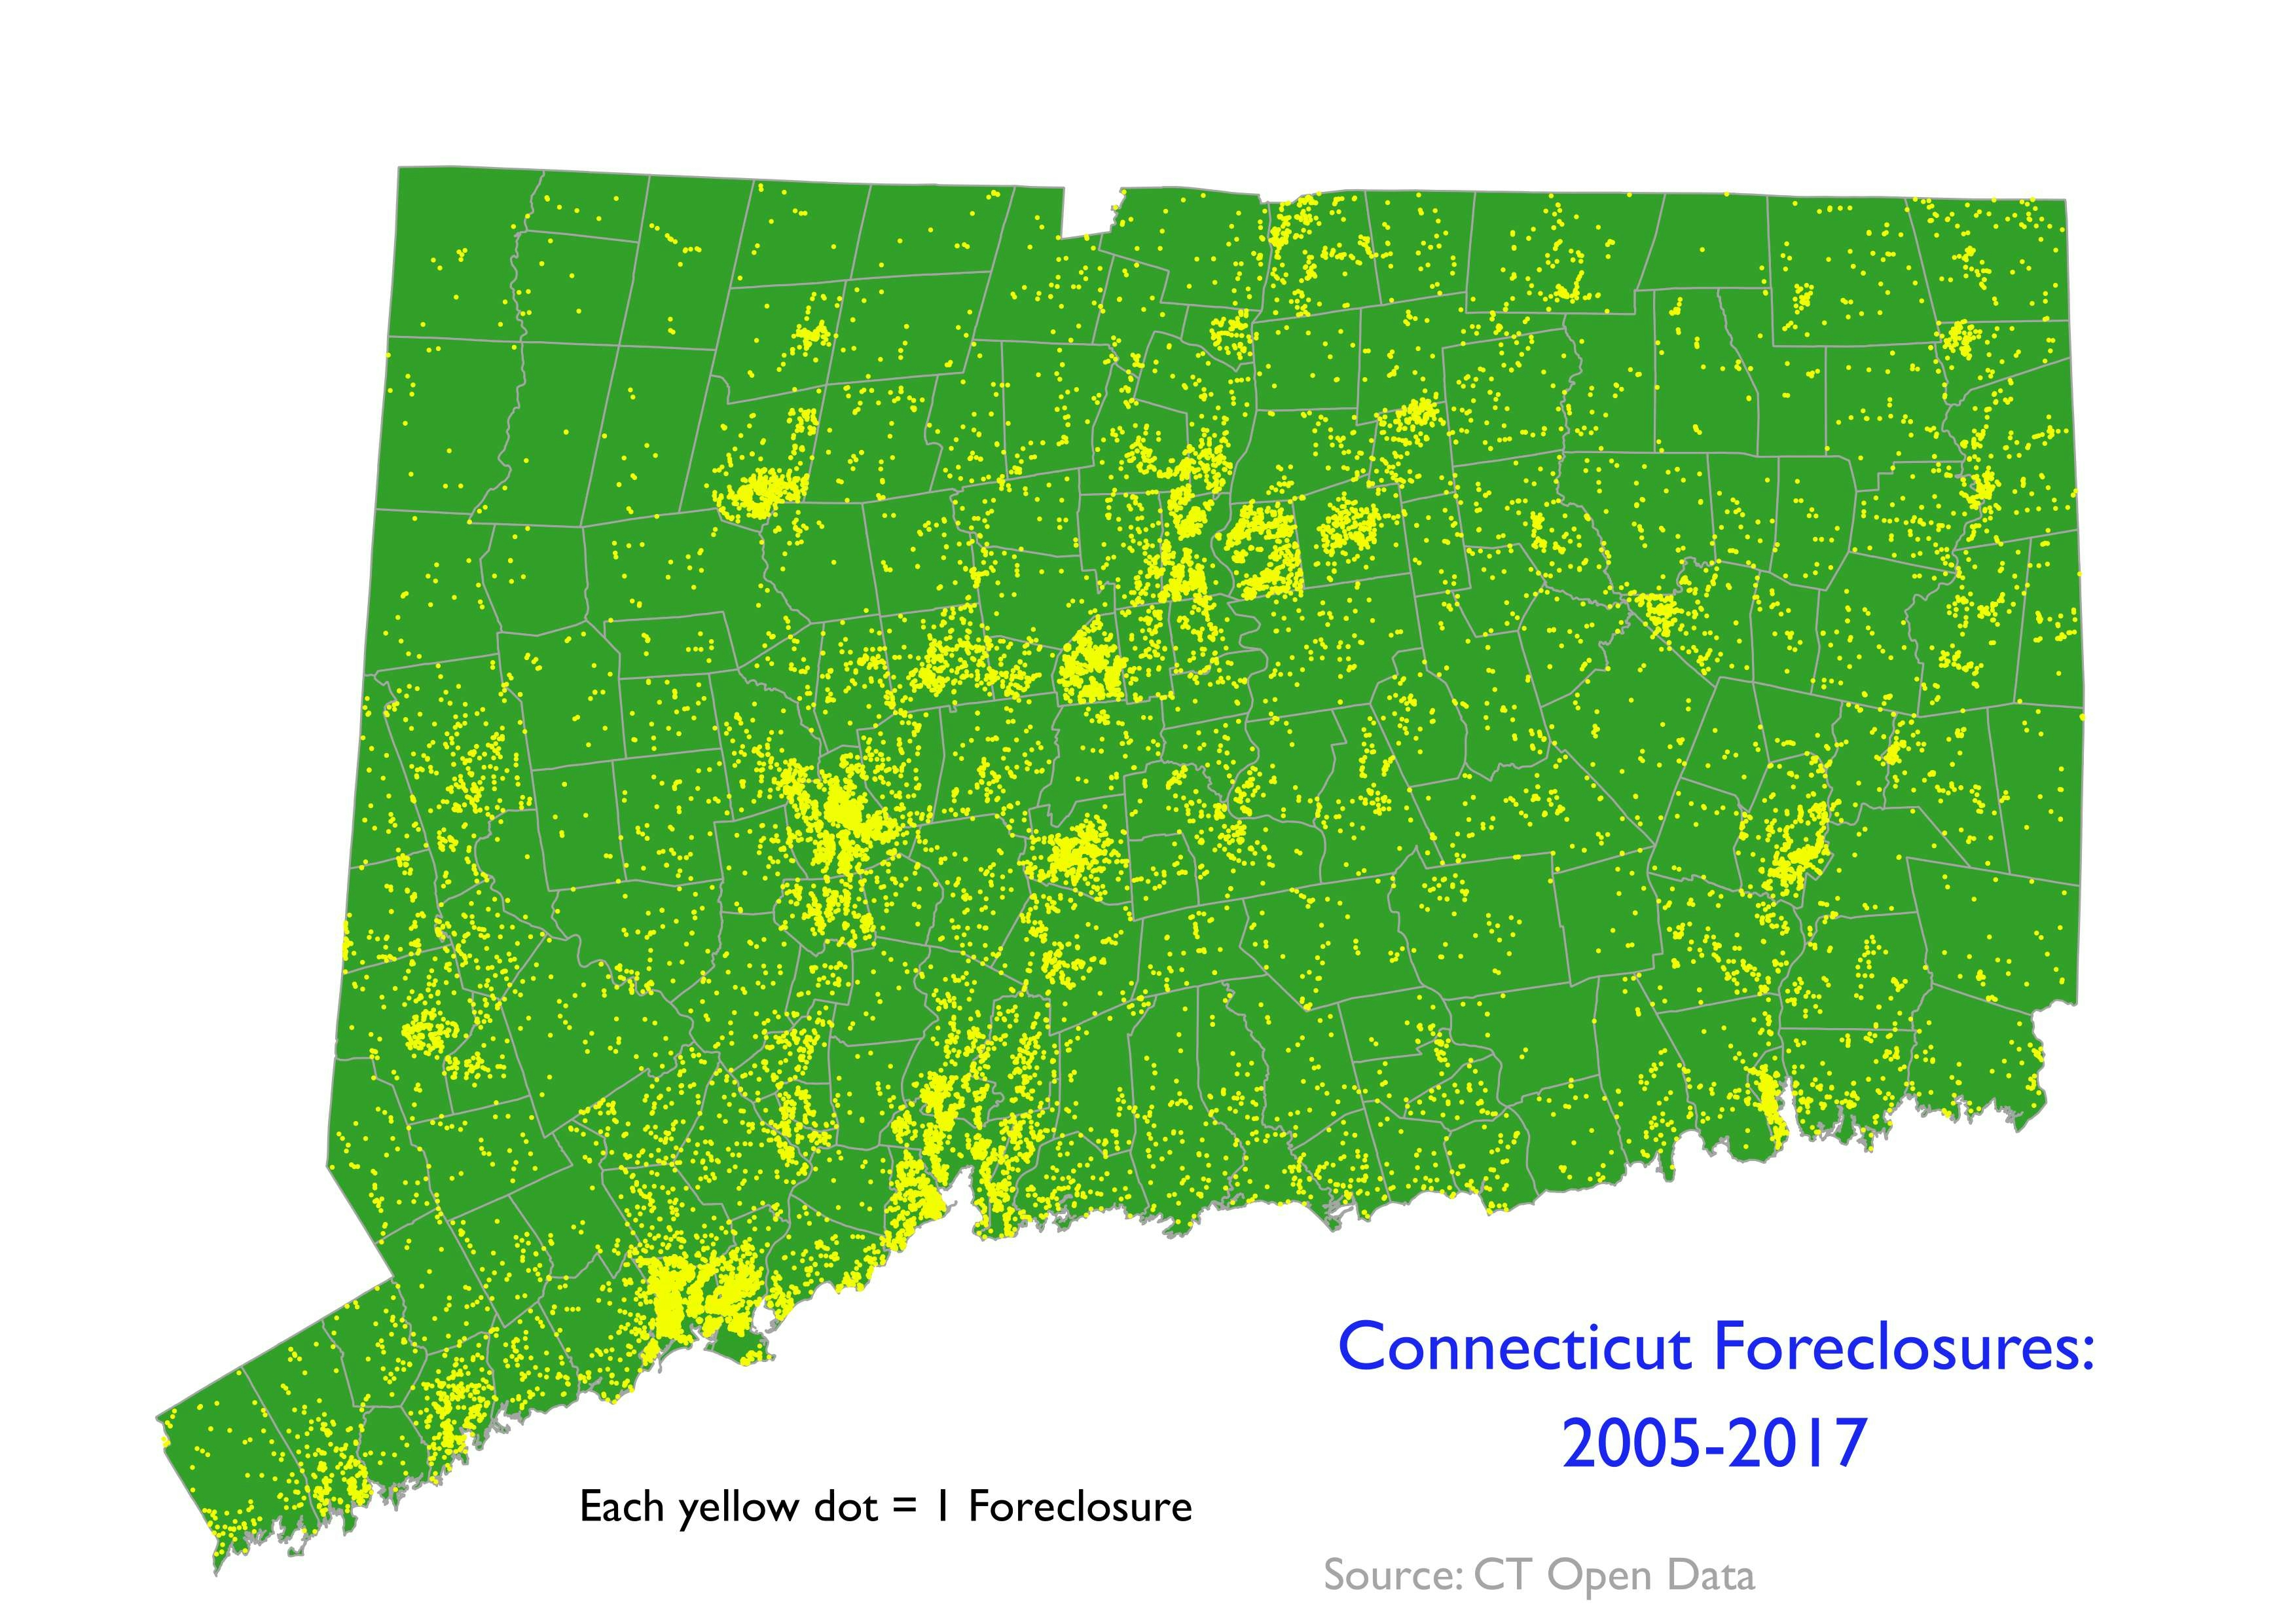 Connecticut Foreclosures, 2005 - 2017